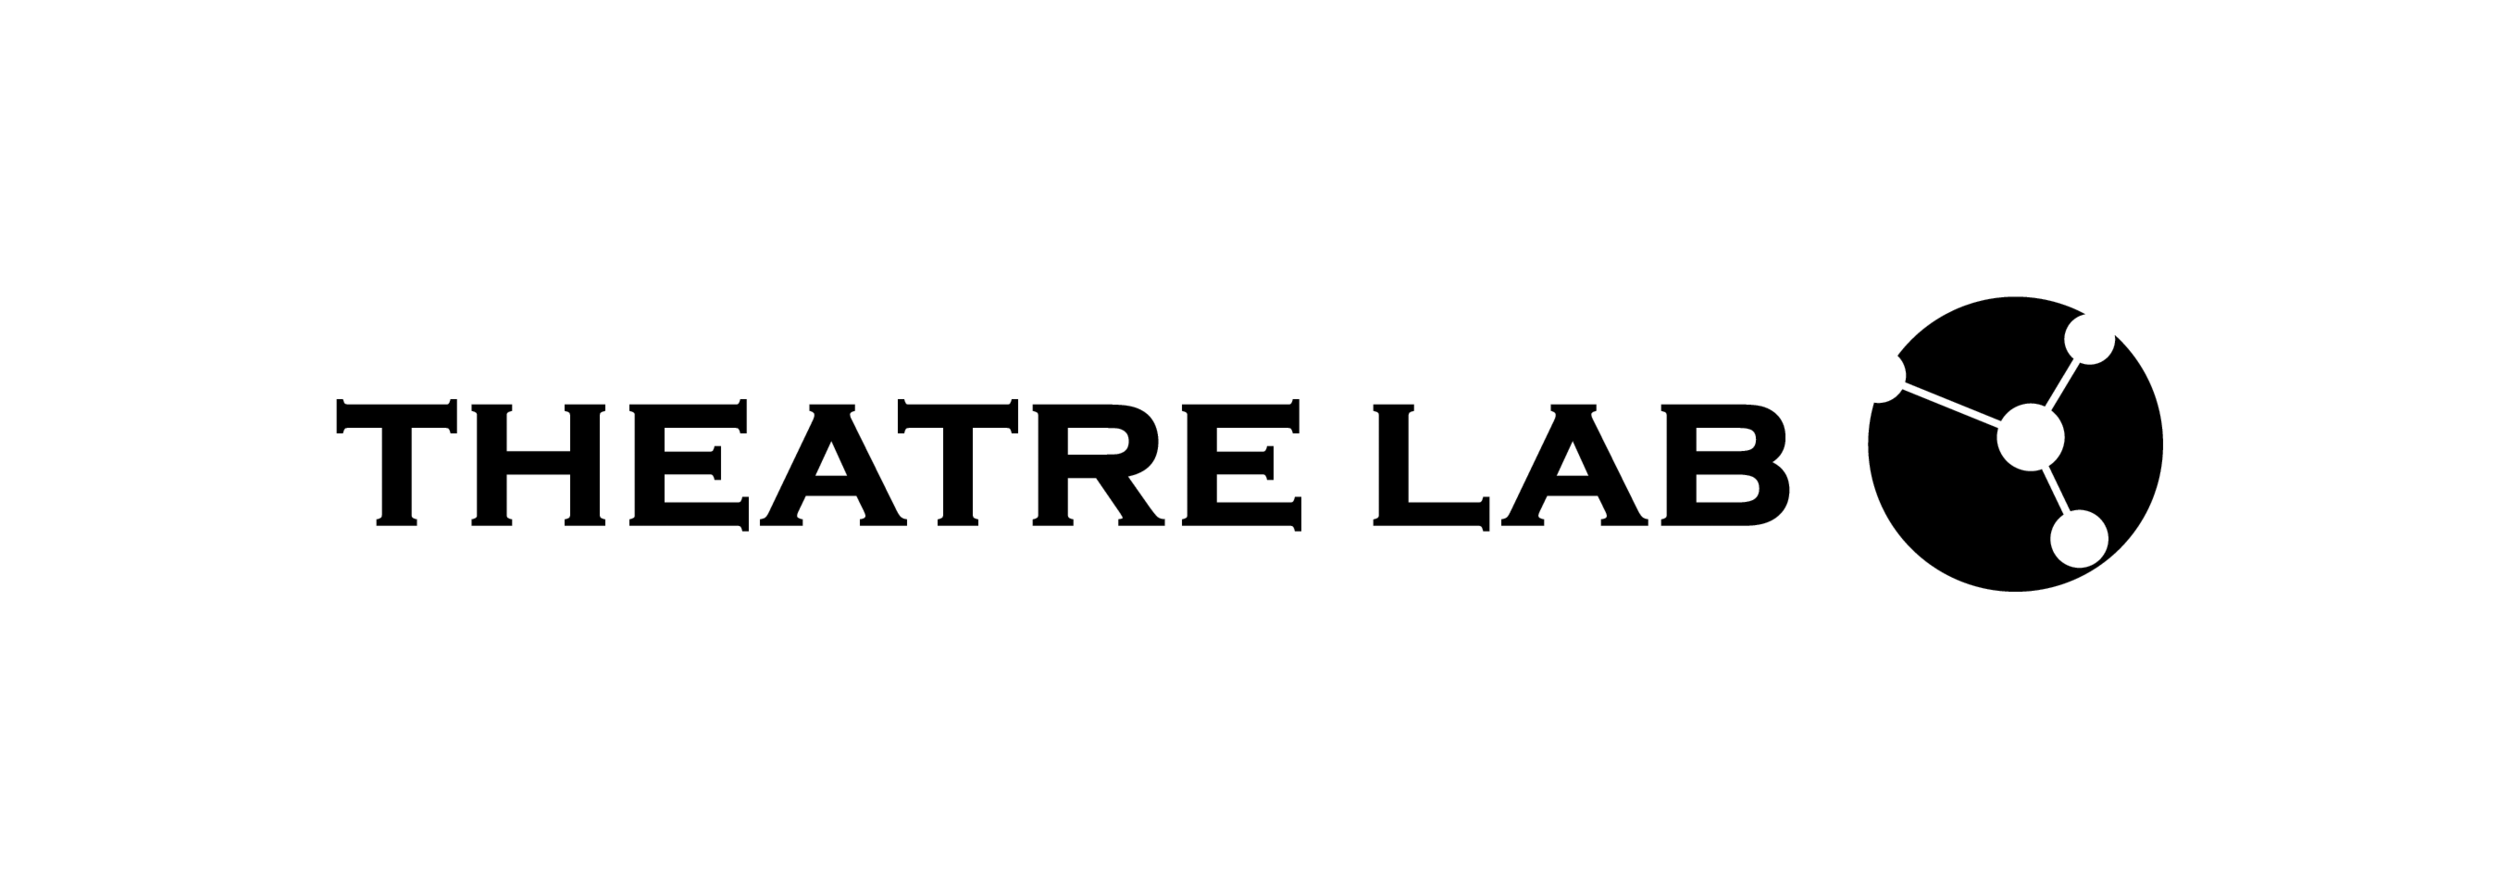 Theatre Lab